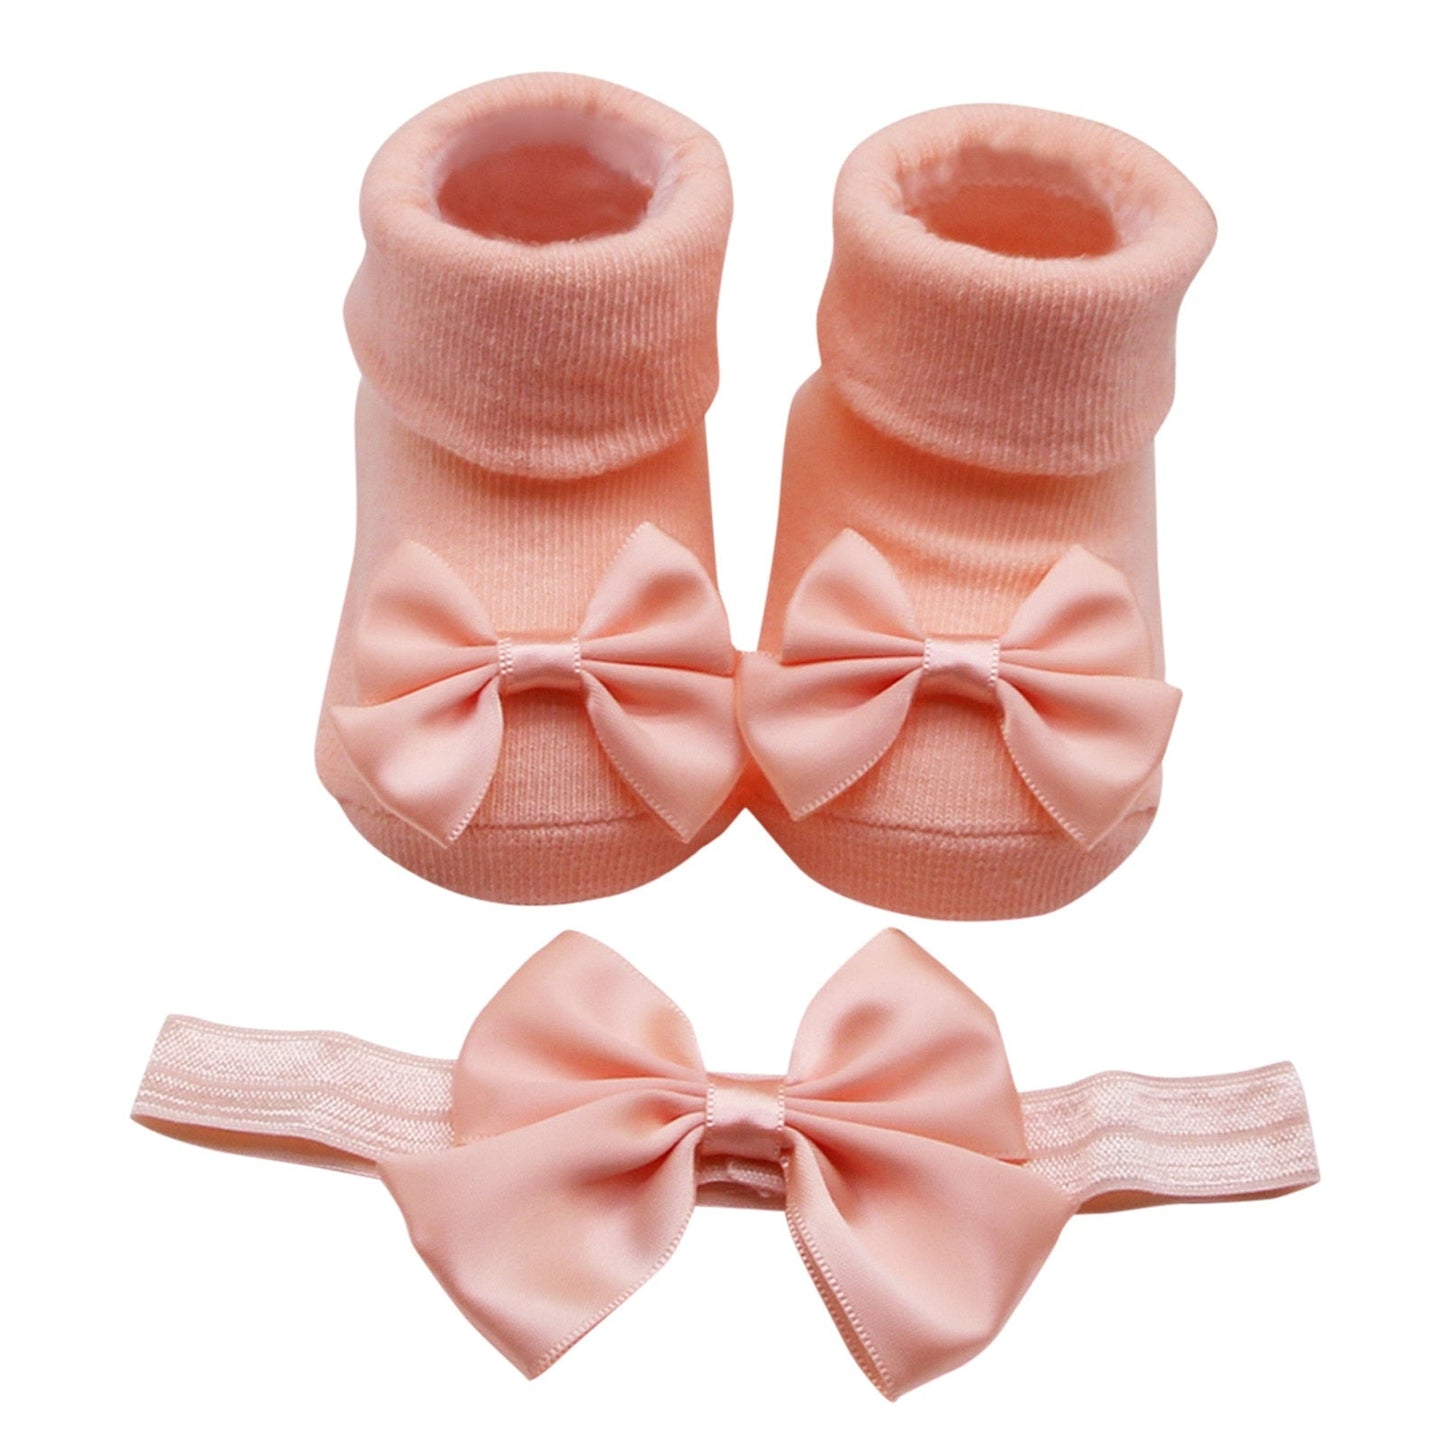 Baby Infant Socks